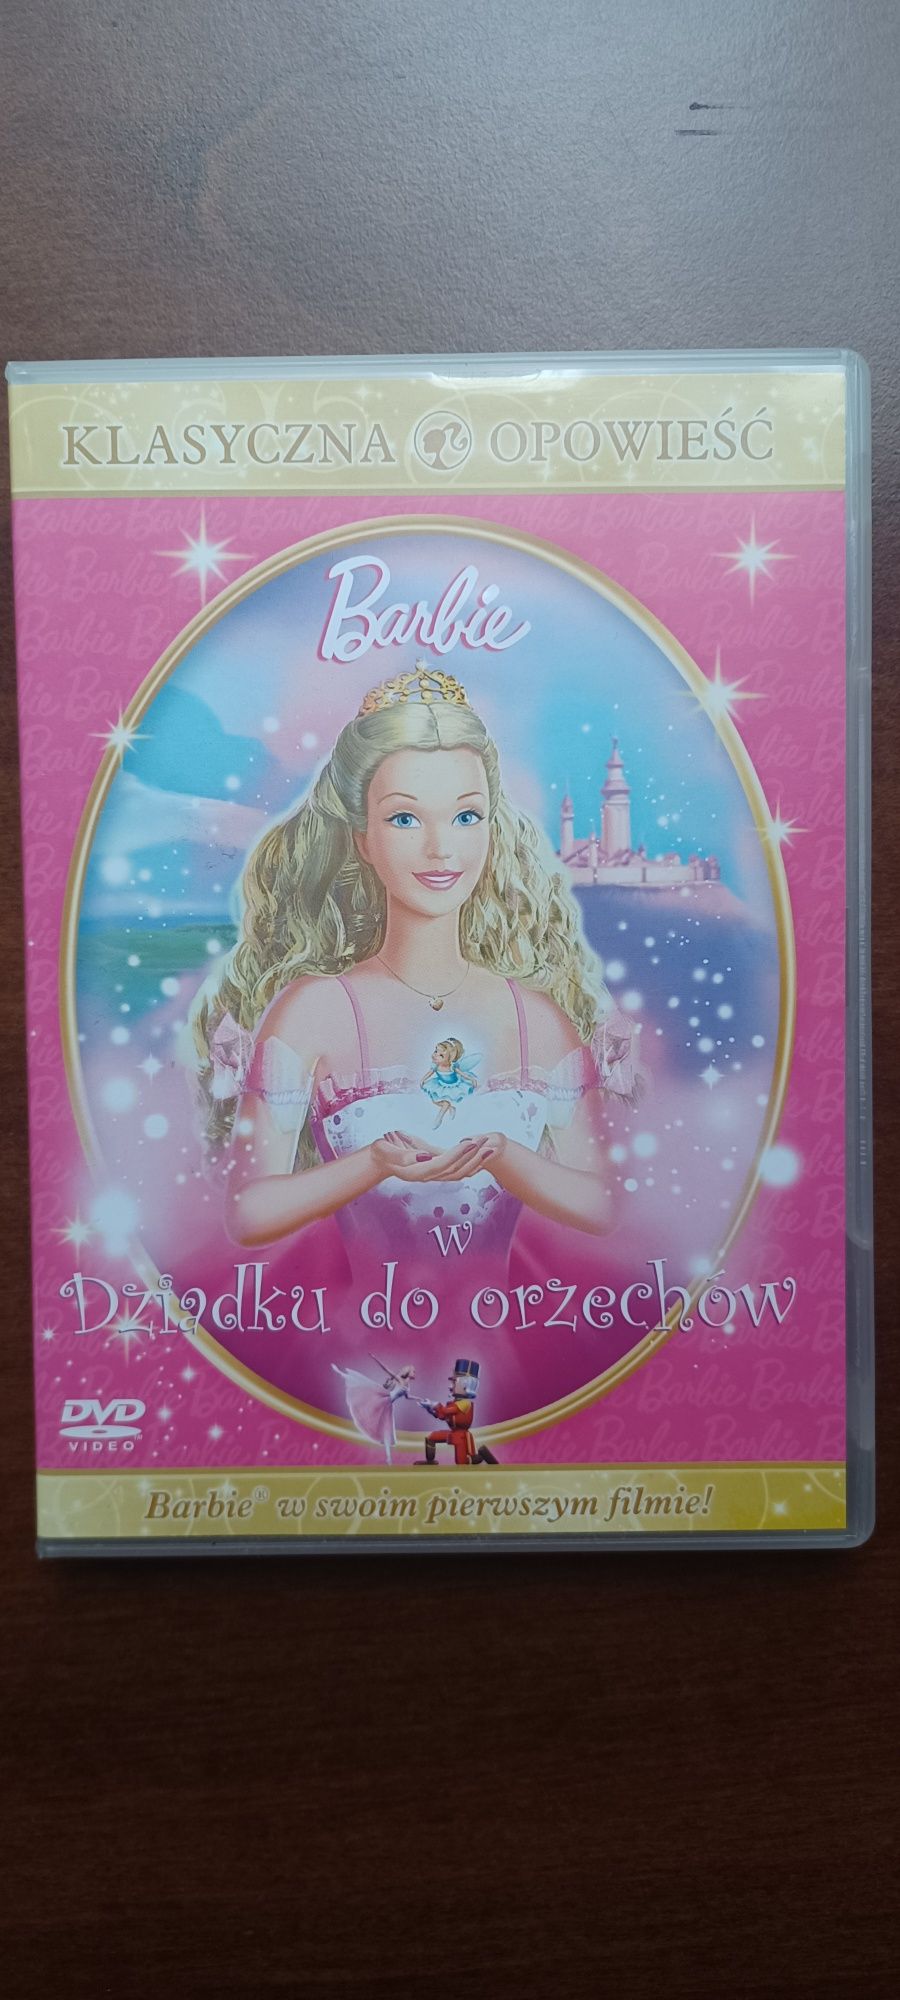 Barbie w Dziadku do orzechów płyta DVD